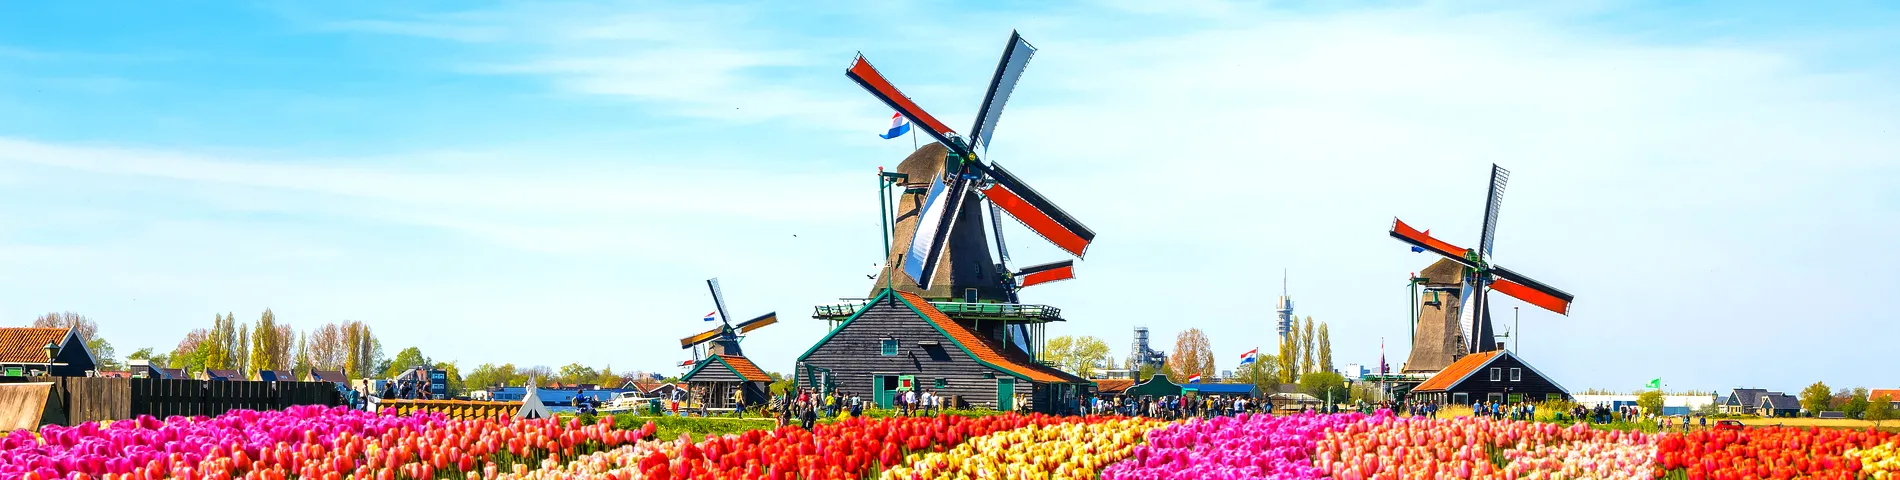 هولندا - 